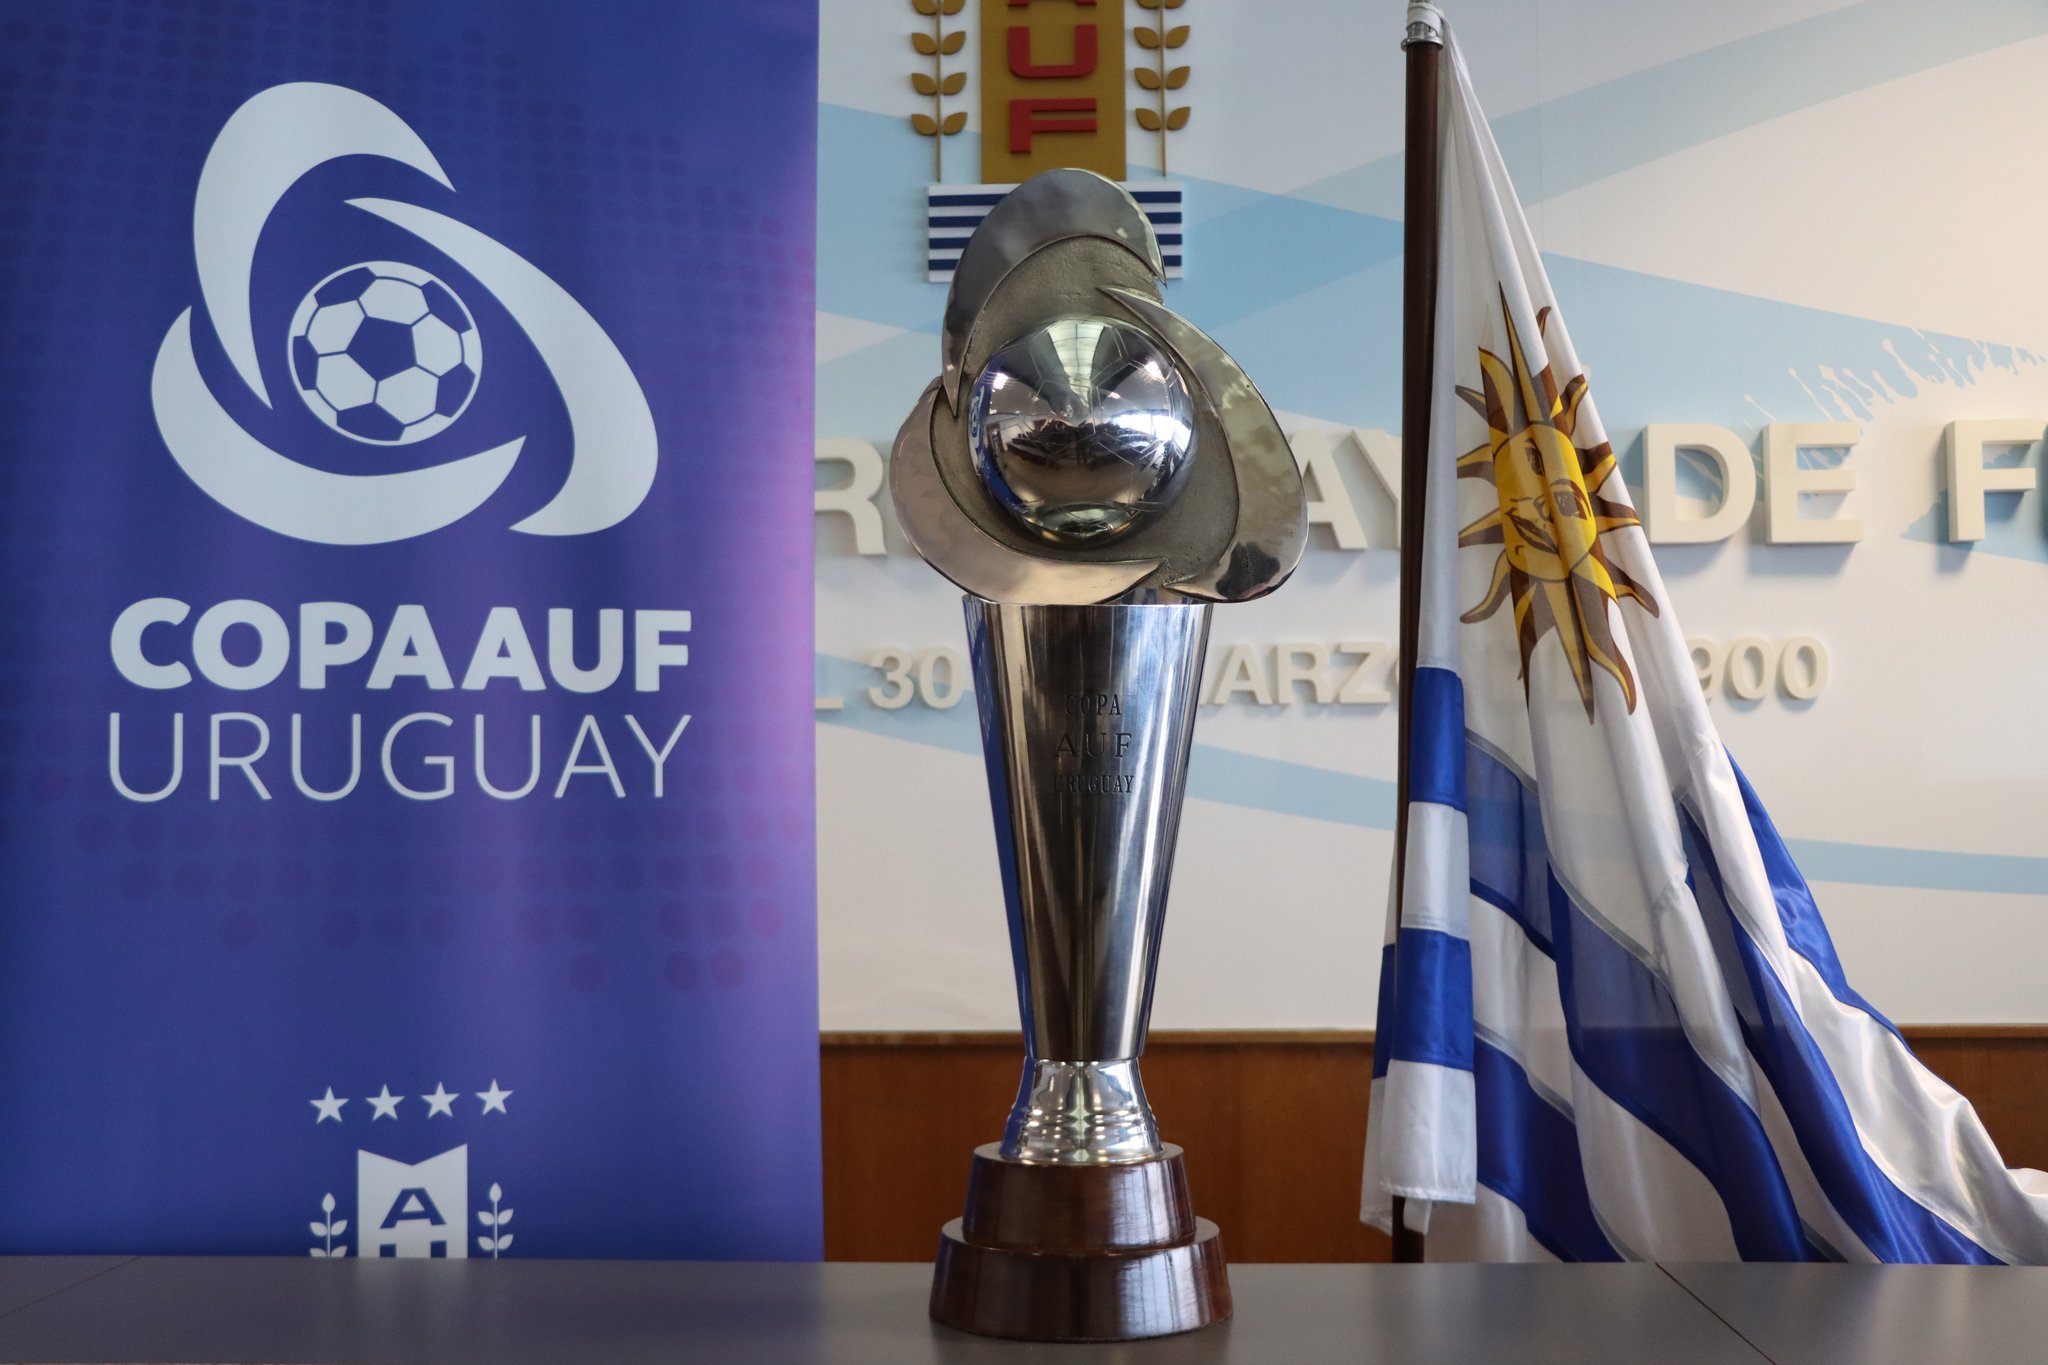 Copa AUF Uruguay: anuncian el primer partido televisado esta semana